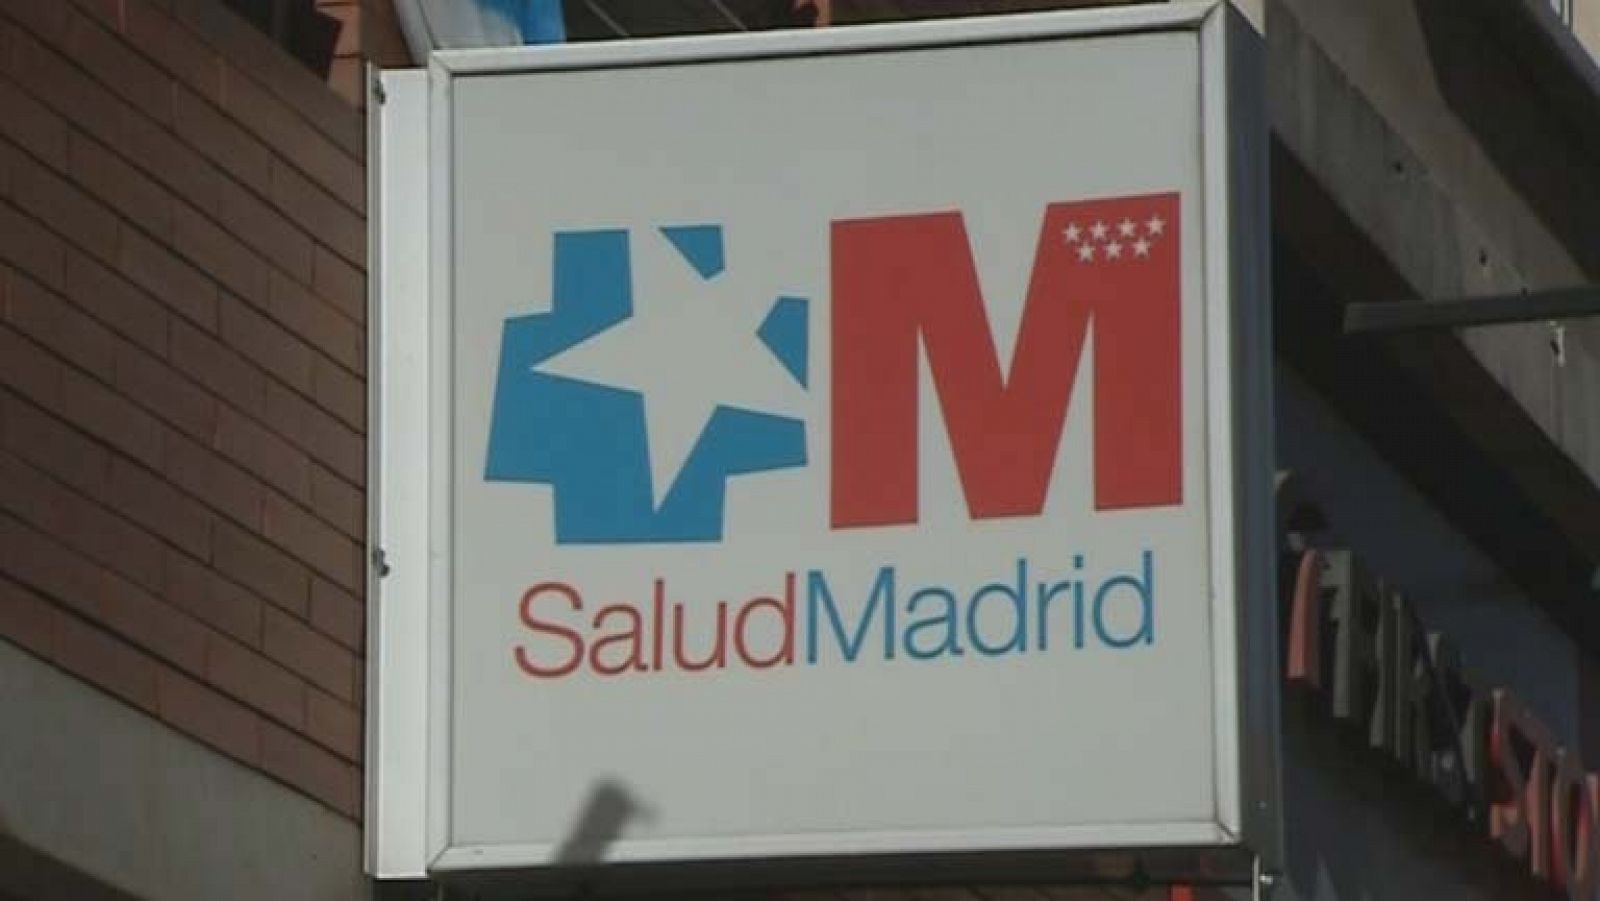 El juez imputa a los responsables de la sanidad madrileña en 2003 